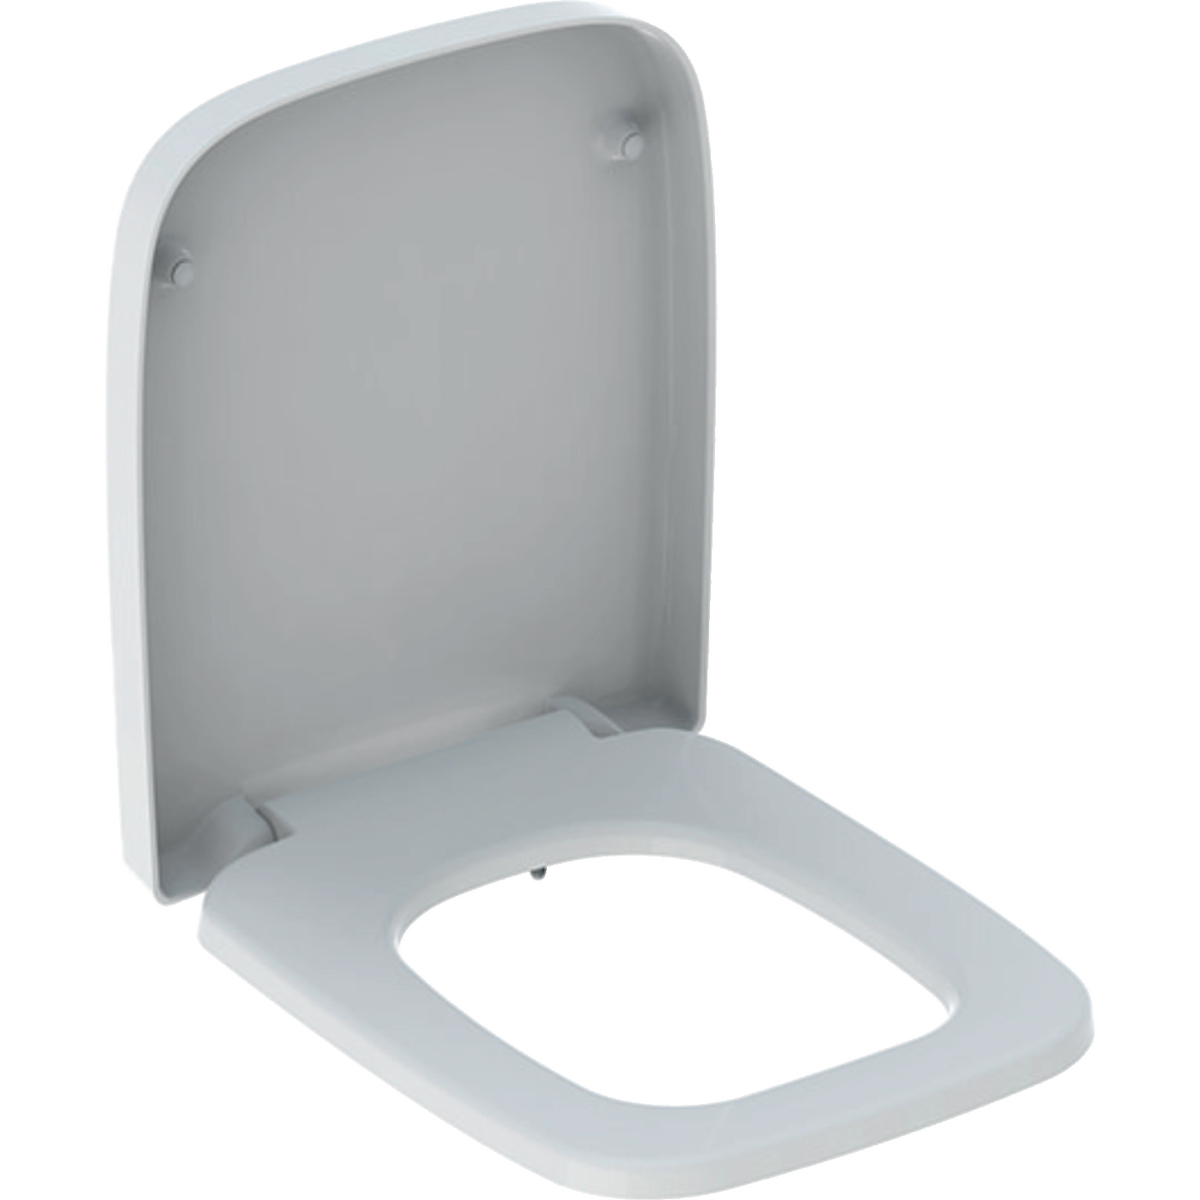 Abattant WC Geberit RENOVA PLAN forme rectangulaire, fixation par le dessus